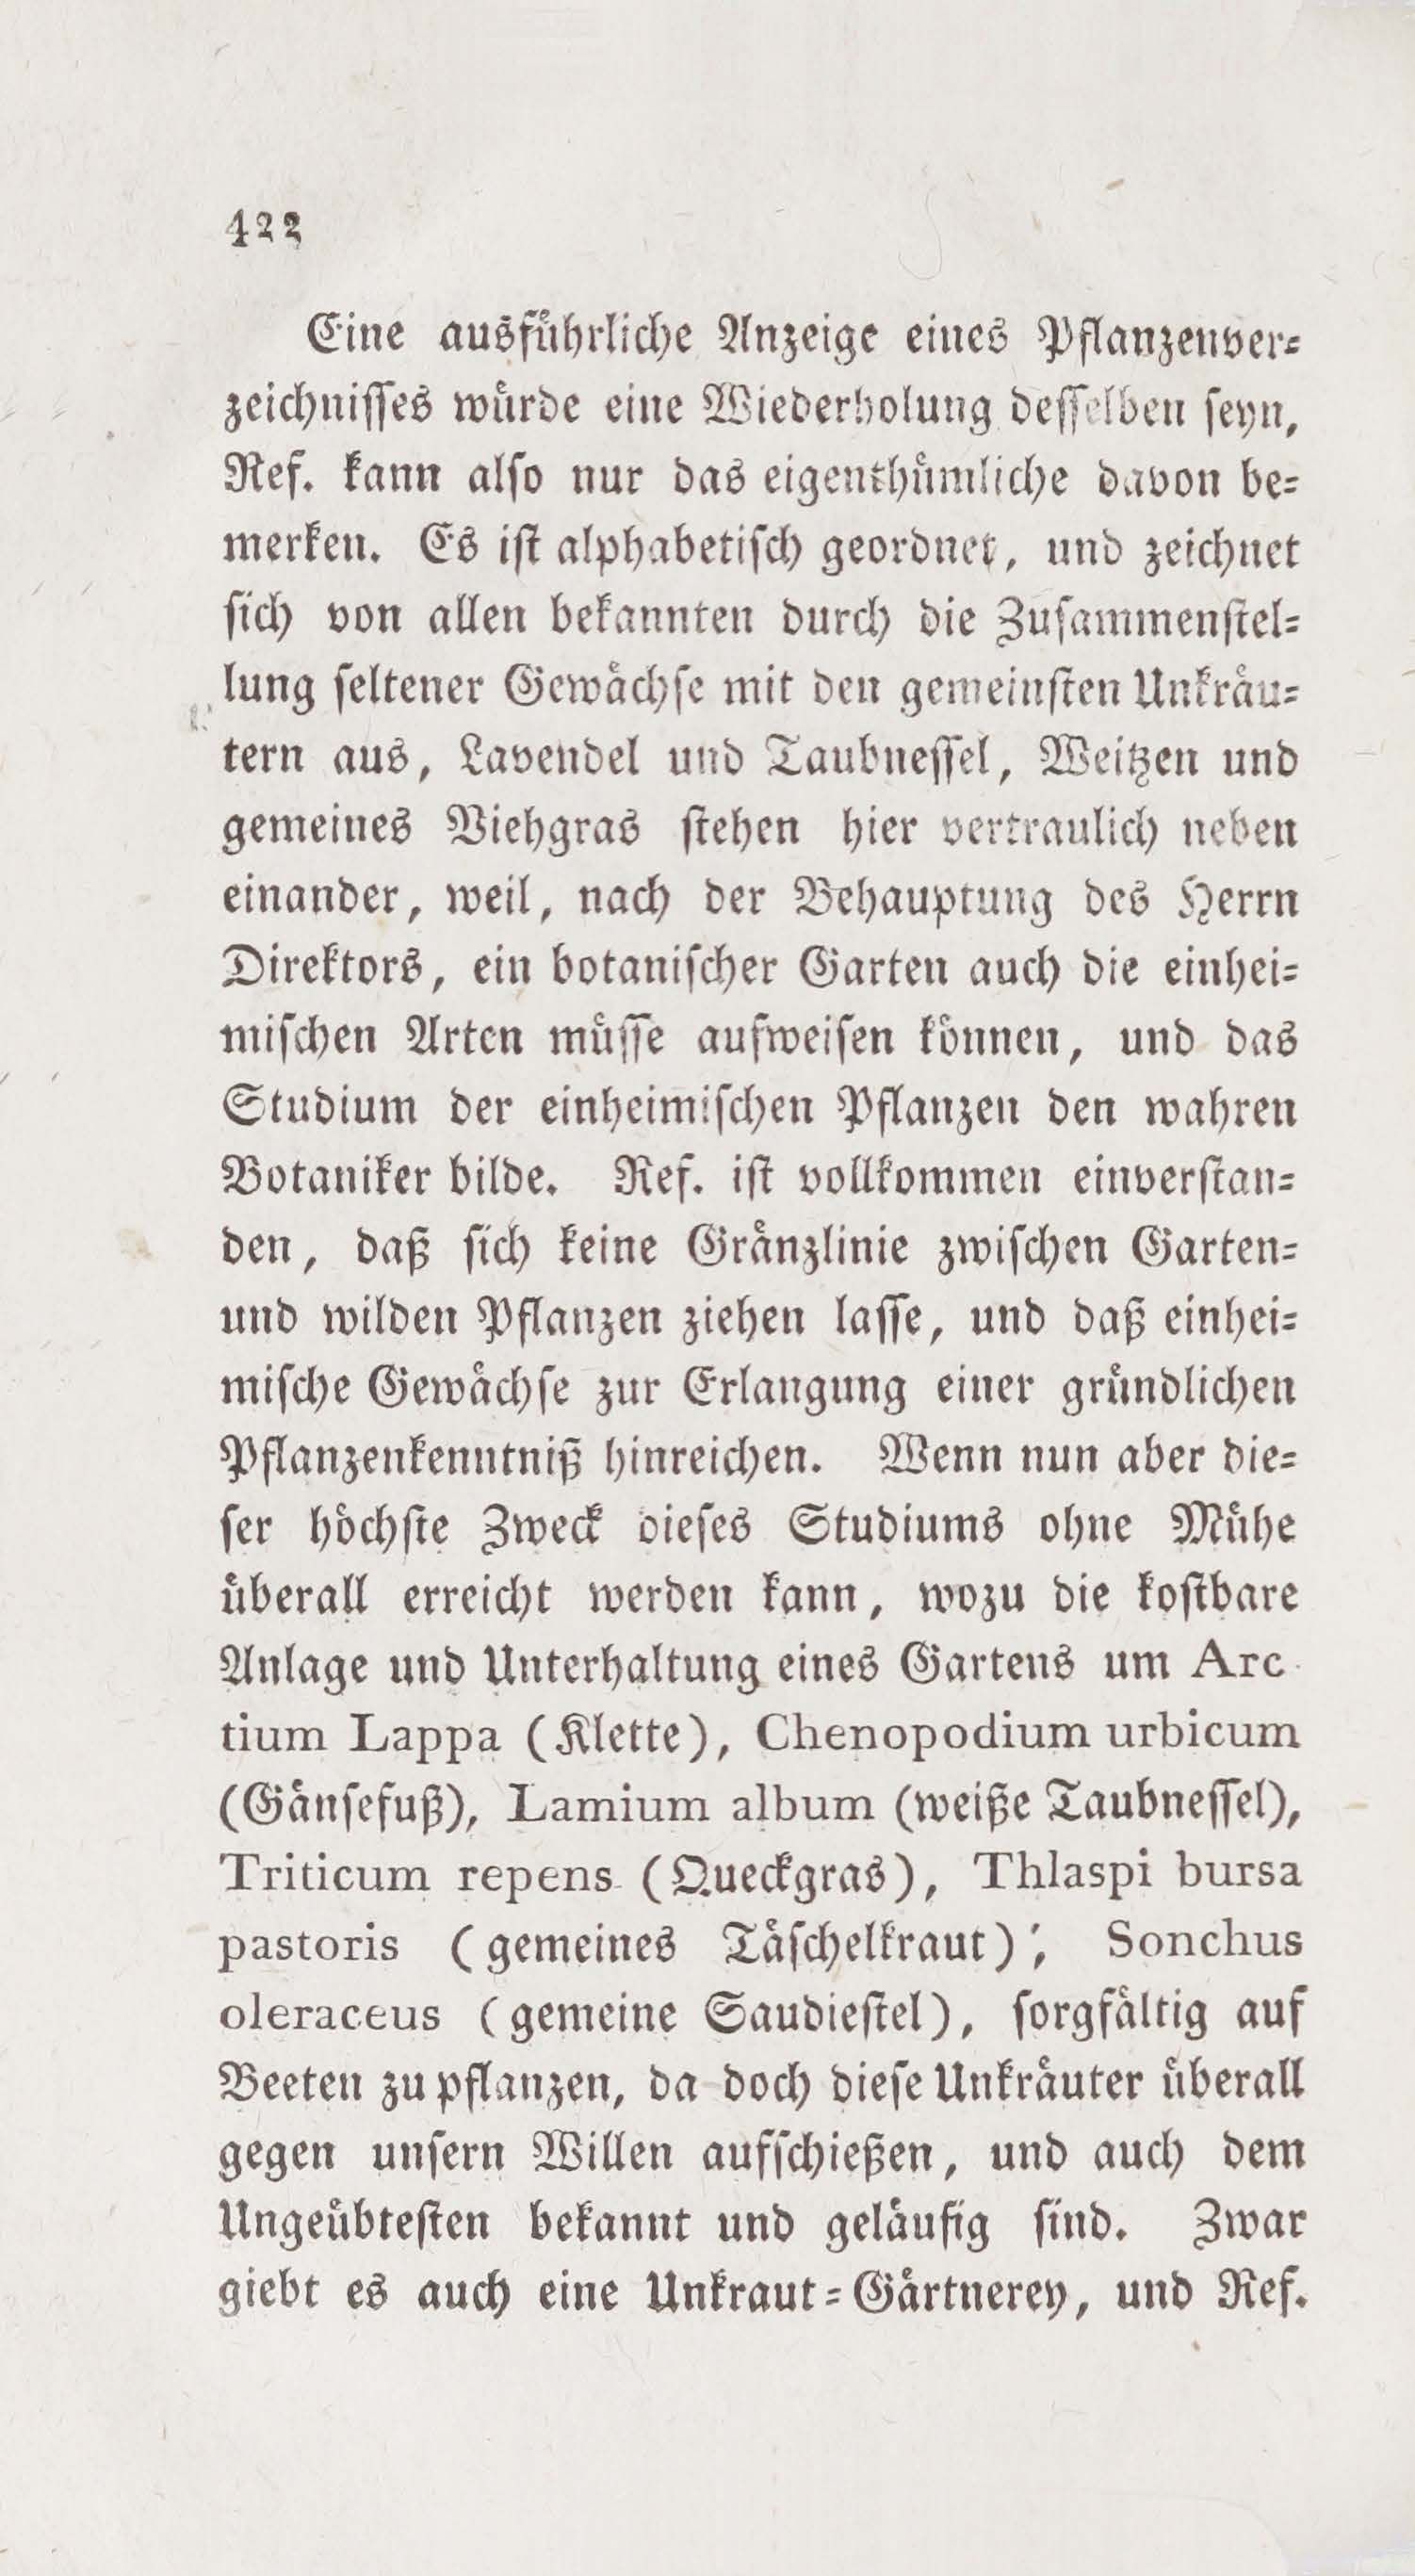 Wöchentliche Unterhaltungen (1805 – 1807) | 2618. (422) Main body of text